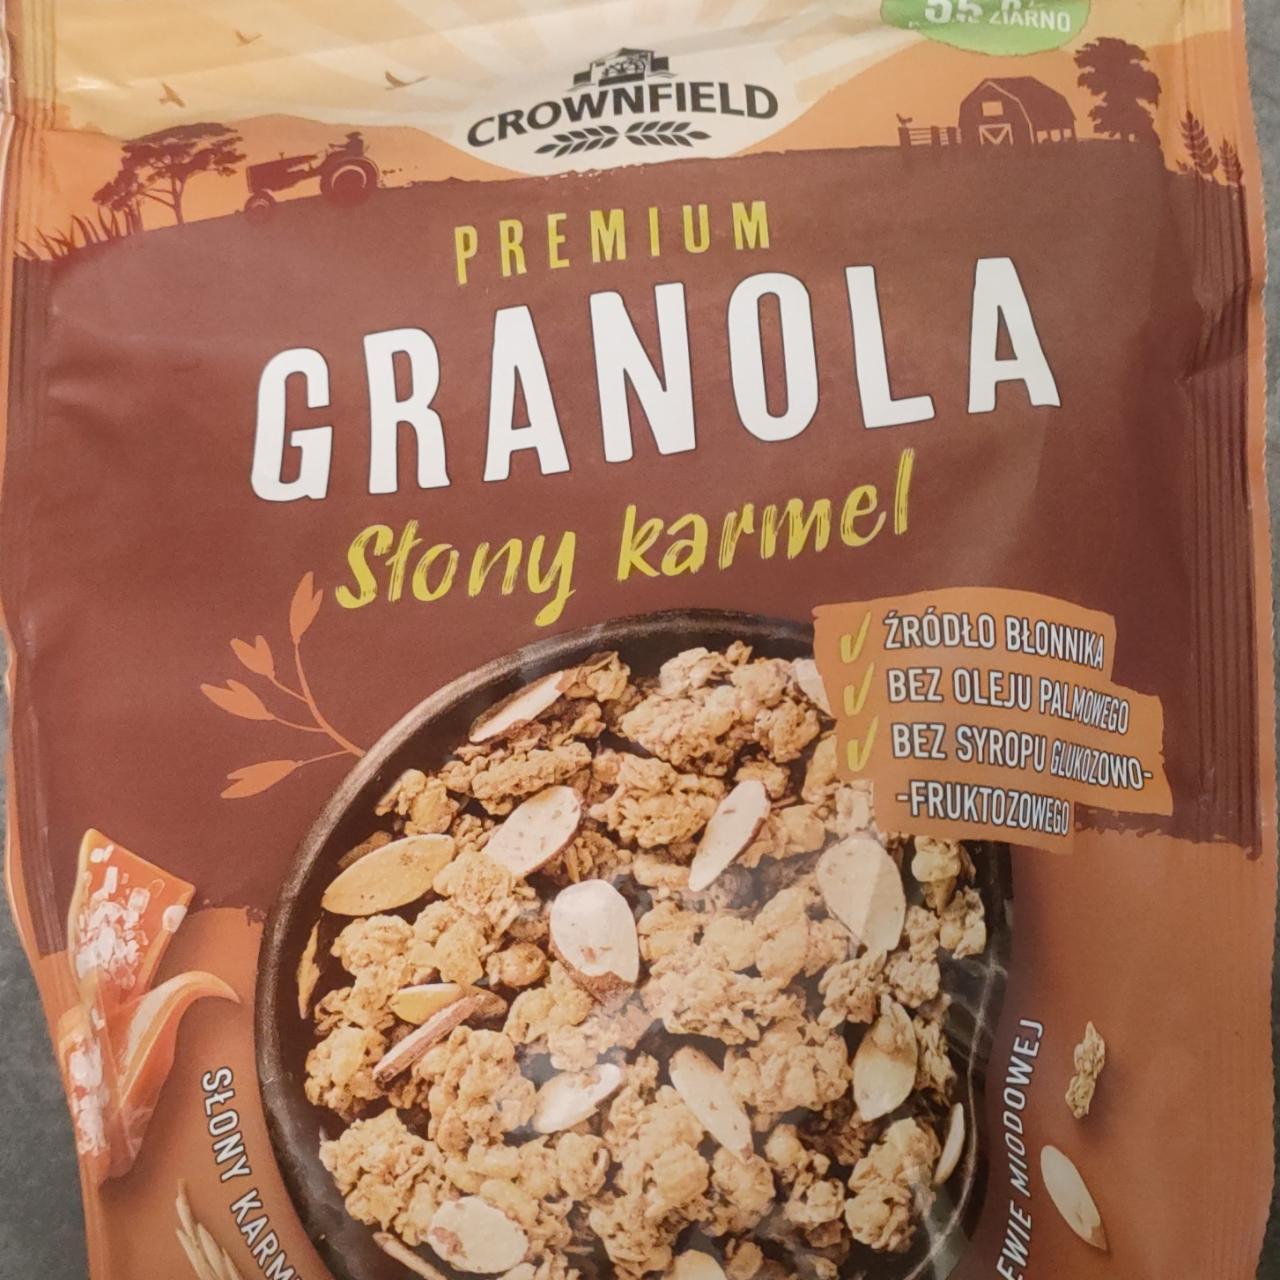 Fotografie - Premium Granola Slony karmel corwnfield